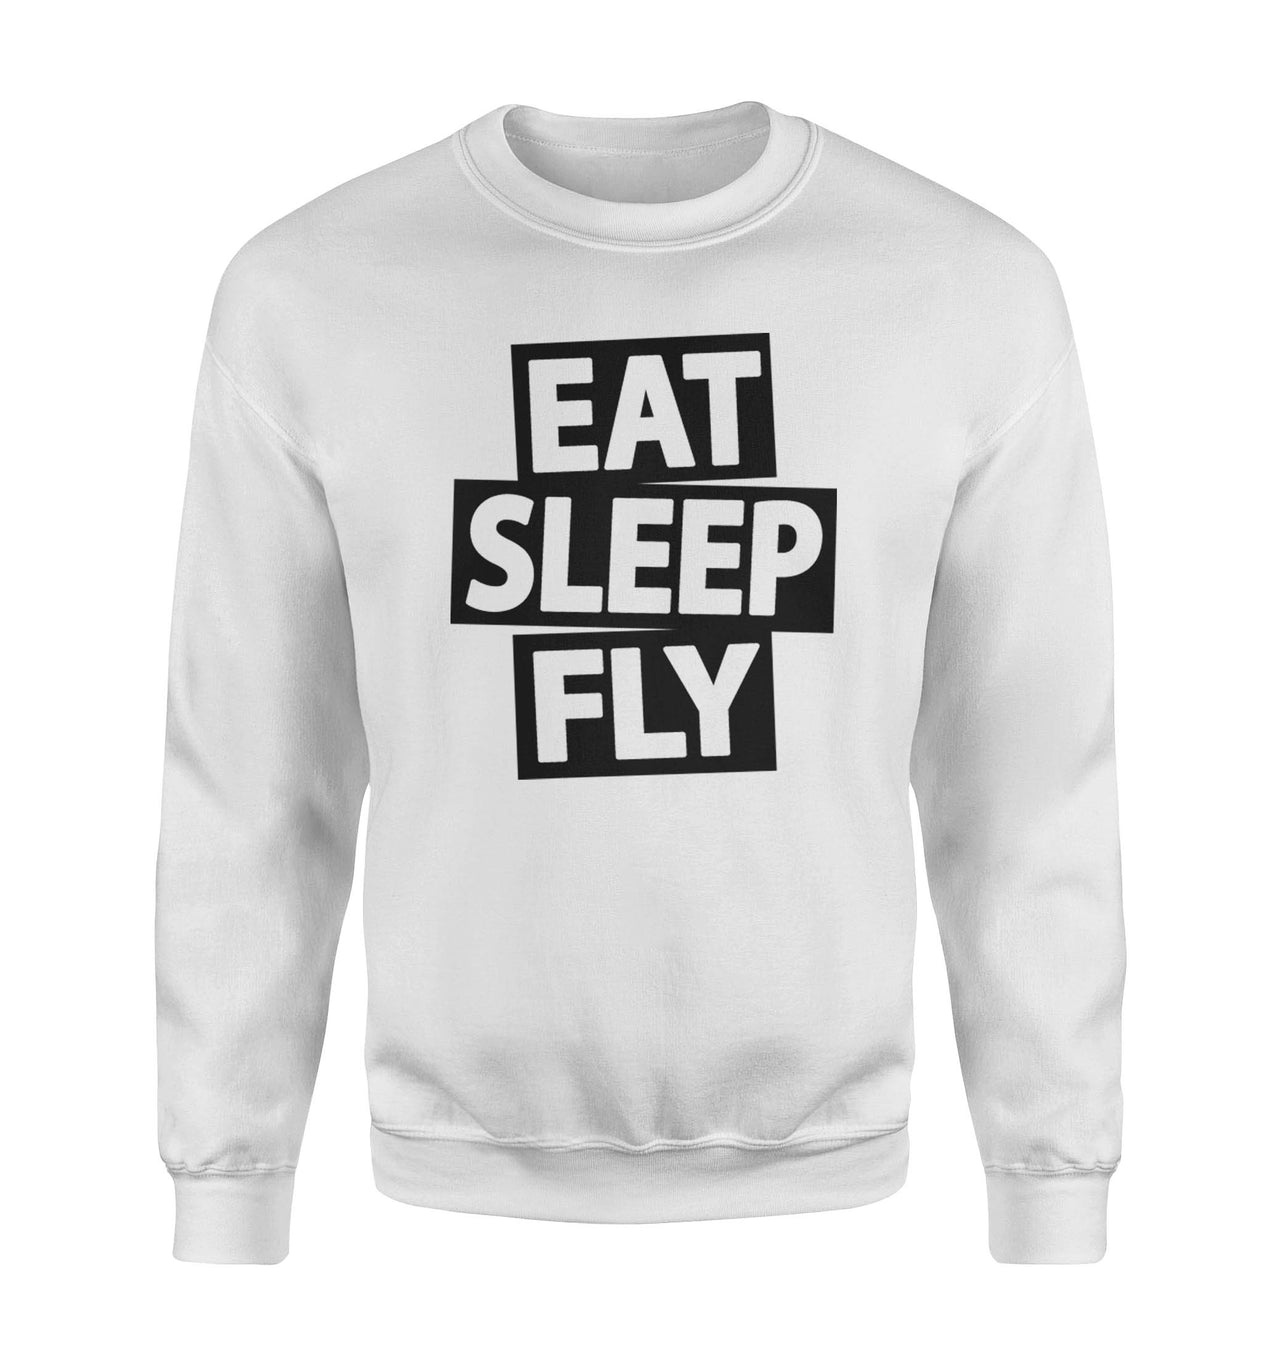 Eat Sleep Fly Designed Sweatshirts